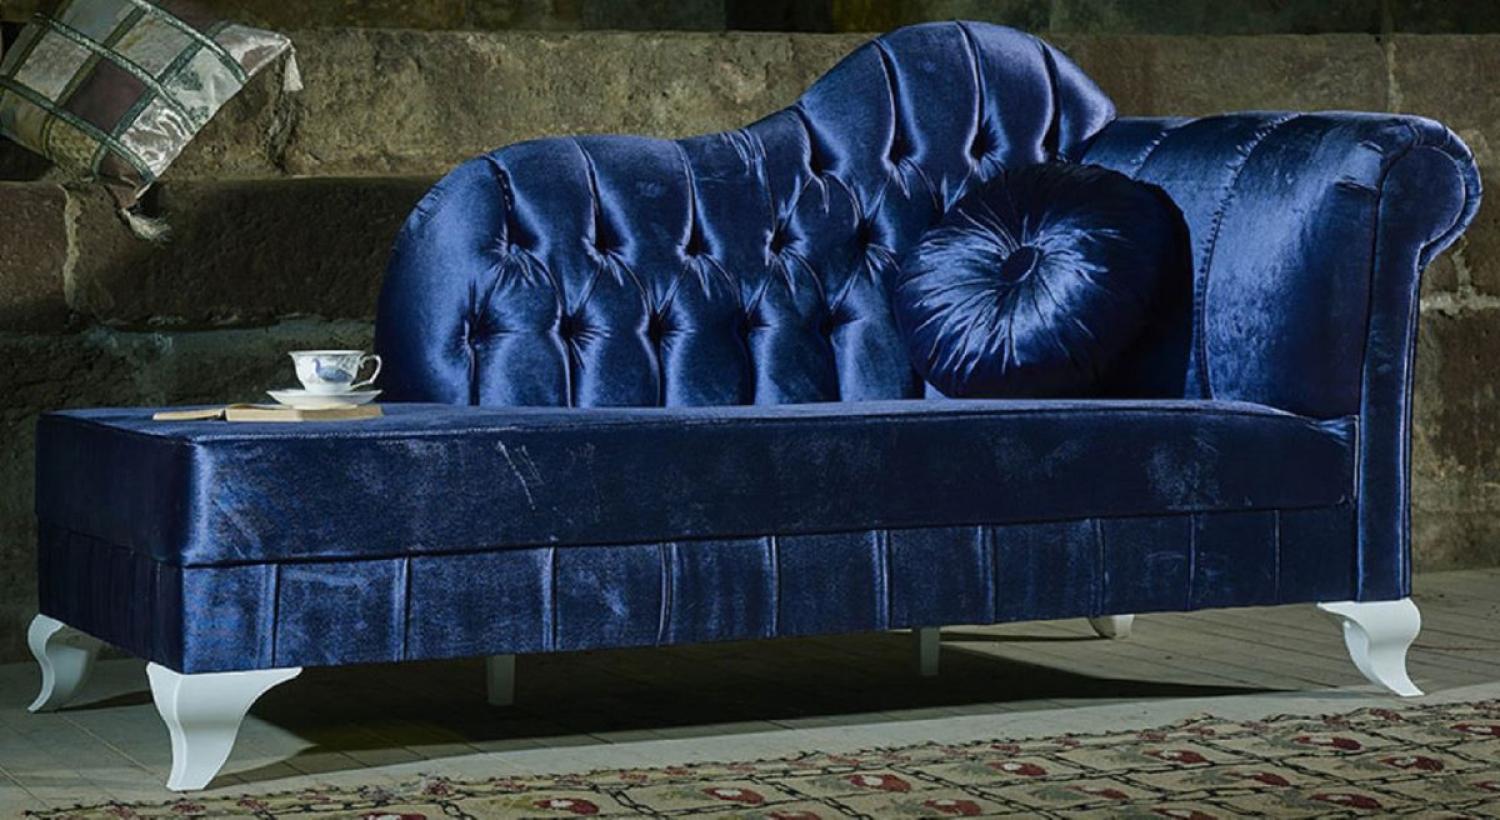 Casa Padrino Luxus Barock Chaiselongue Blau / Weiß - Handgefertigte Massivholz Recamiere mit edlem Samtstoff und dekorativem Kissen - Barock Möbel - Edel & Prunkvoll Bild 1